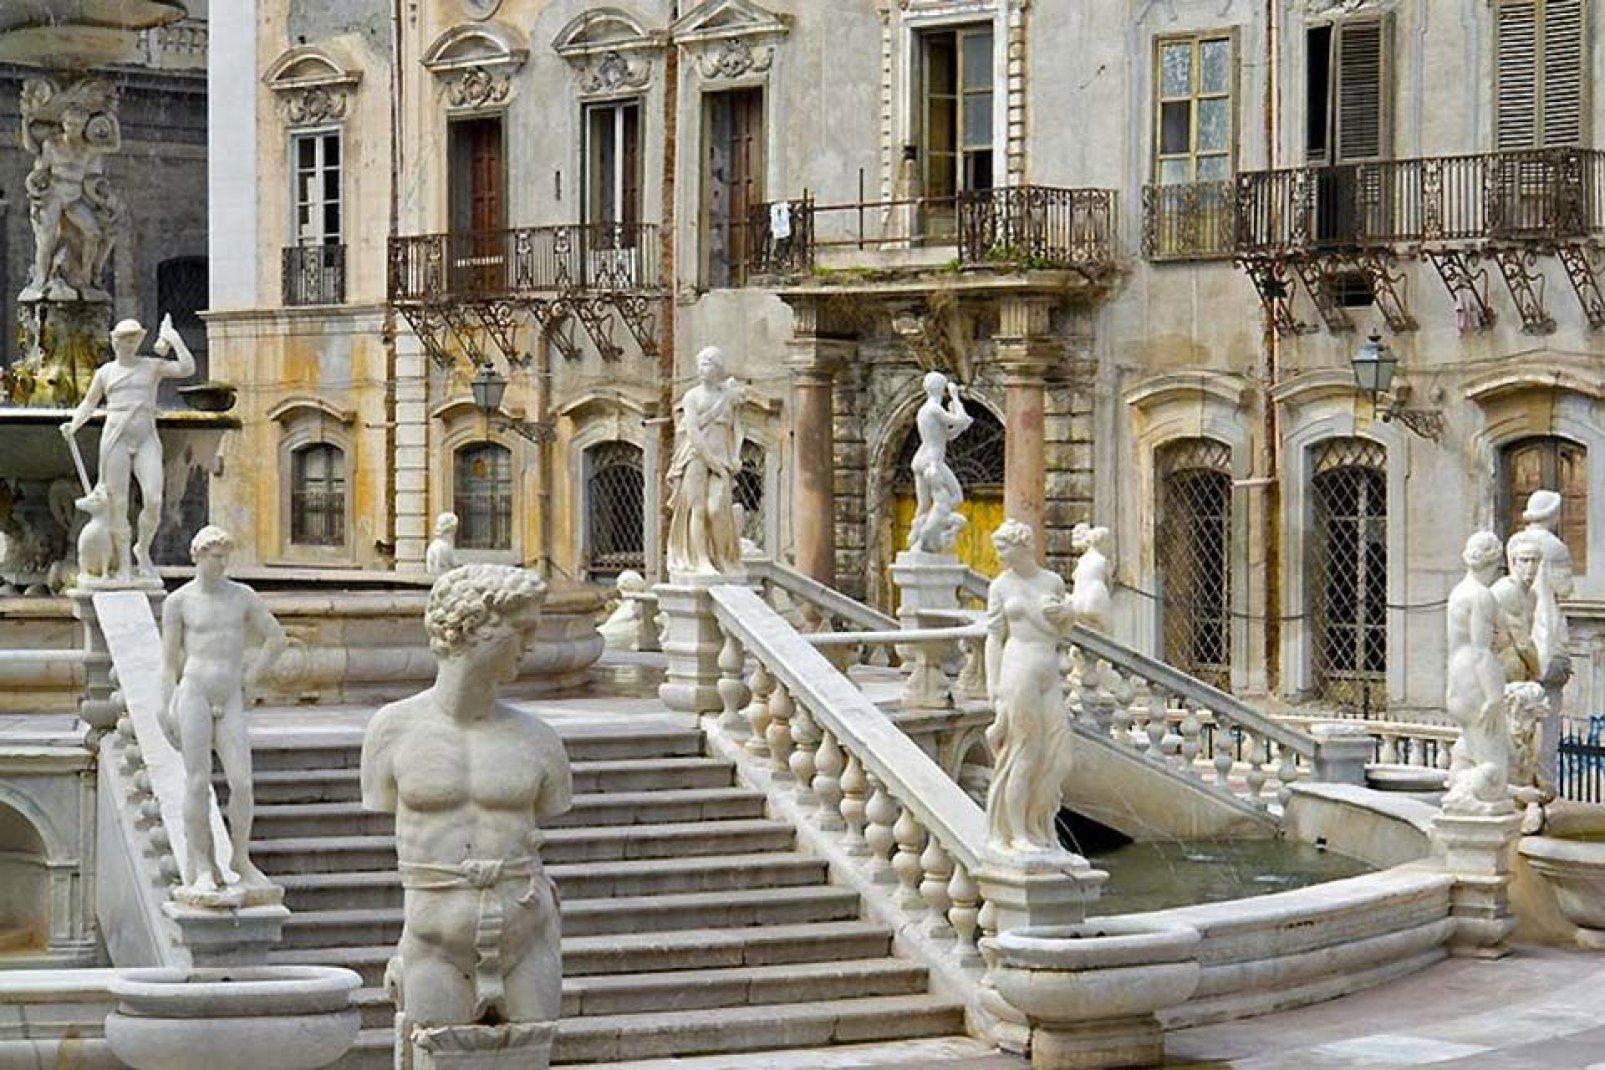 Au centre de la place, on aperçoit la célèbre fontaine réalisée par Camillo Camilliani en 1554.